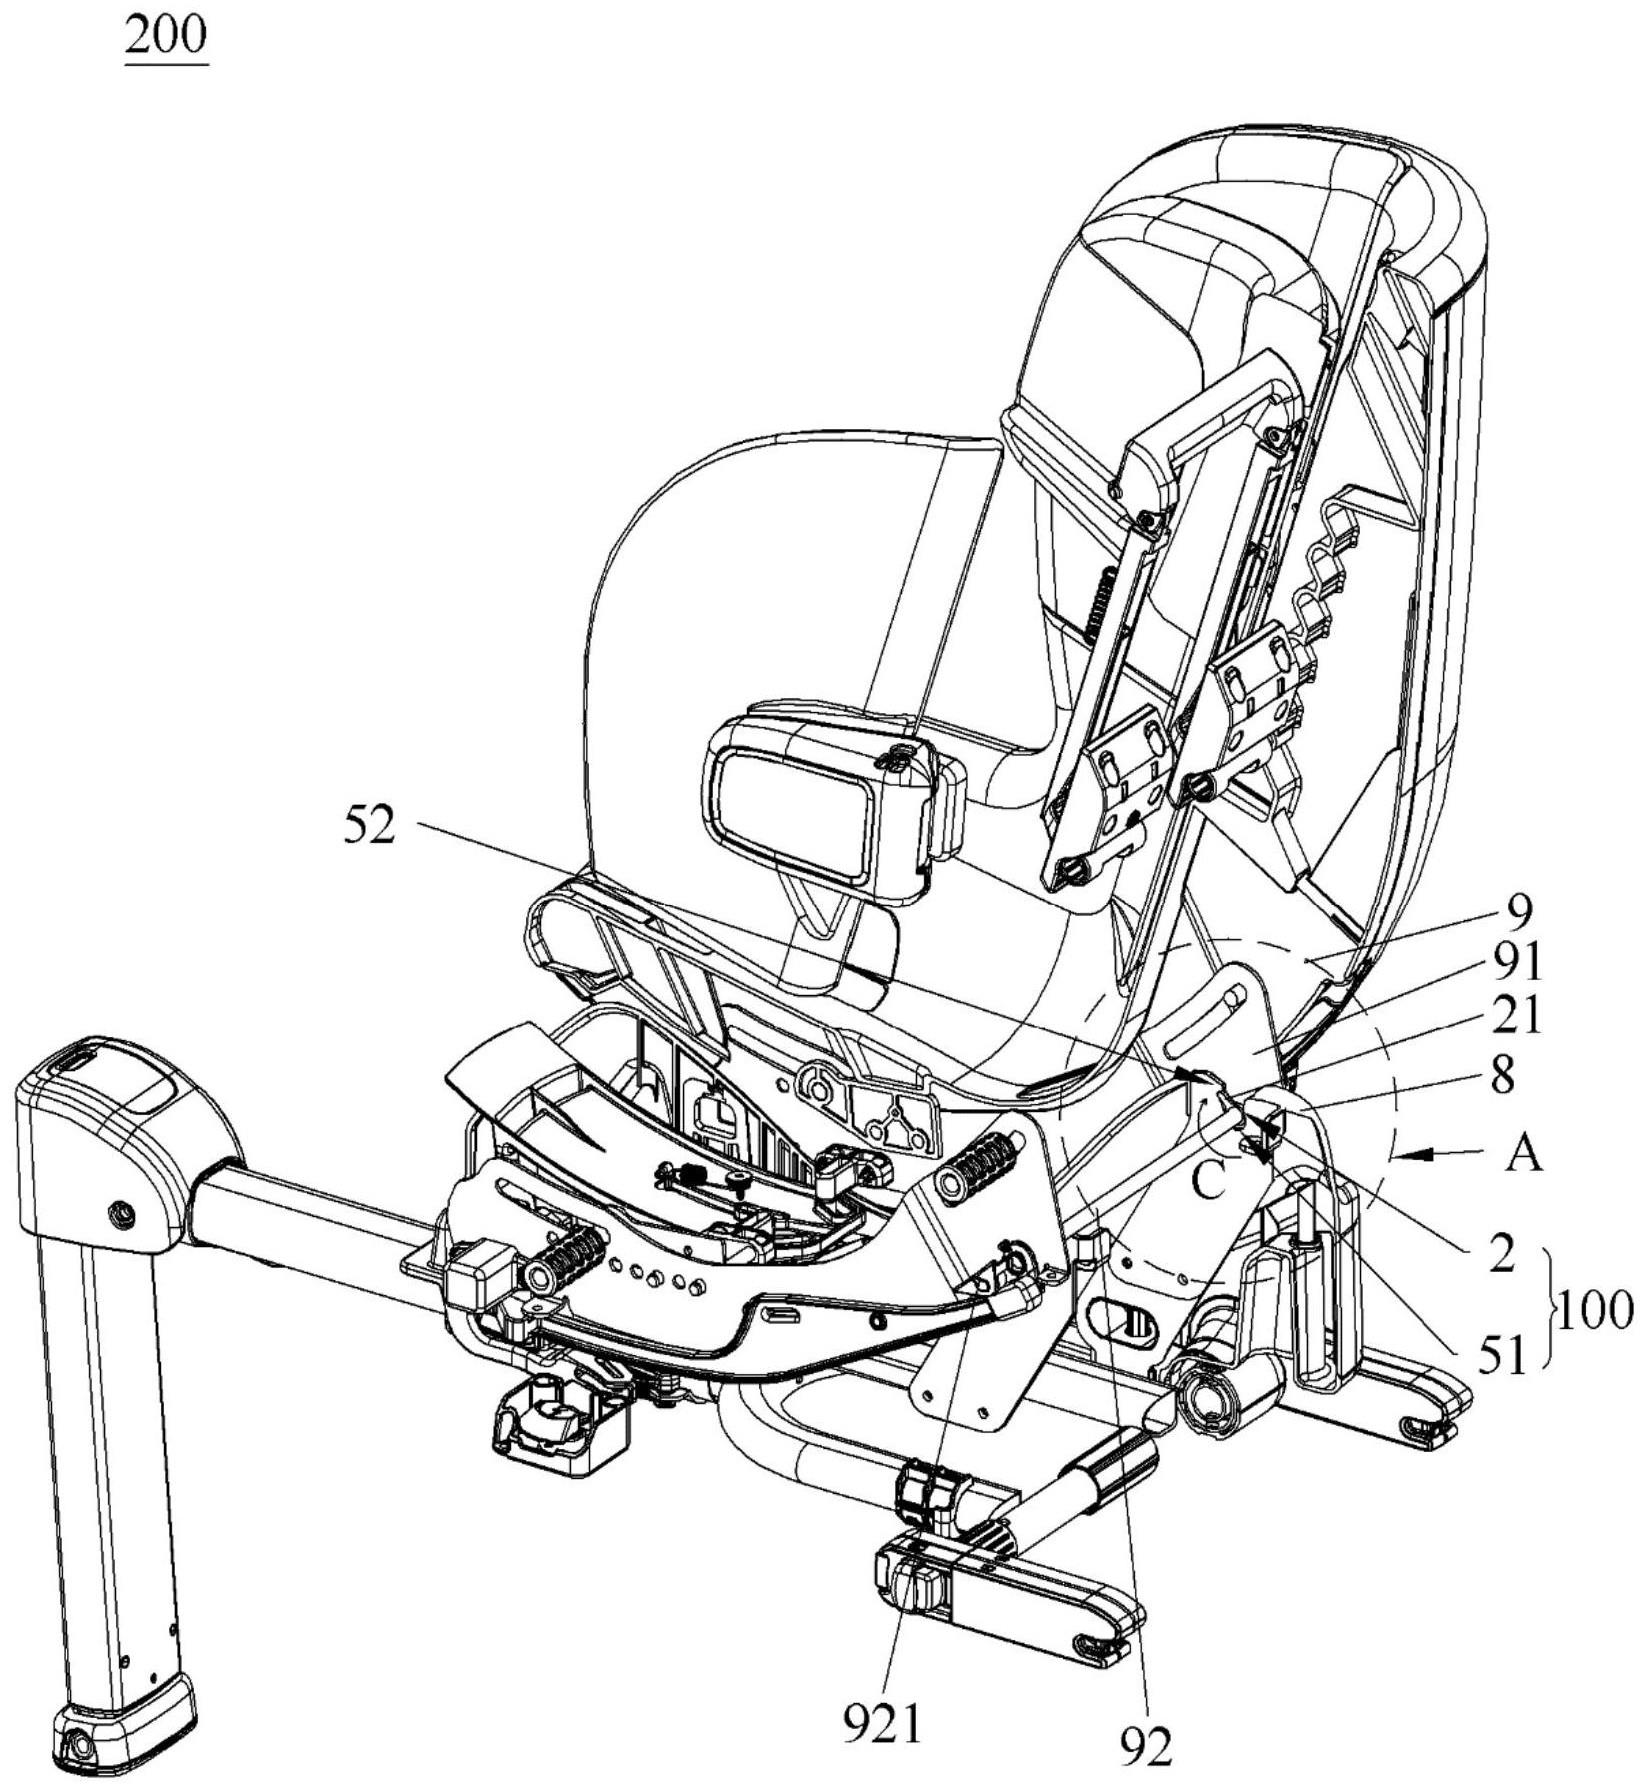 安全座椅与载具的制作方法